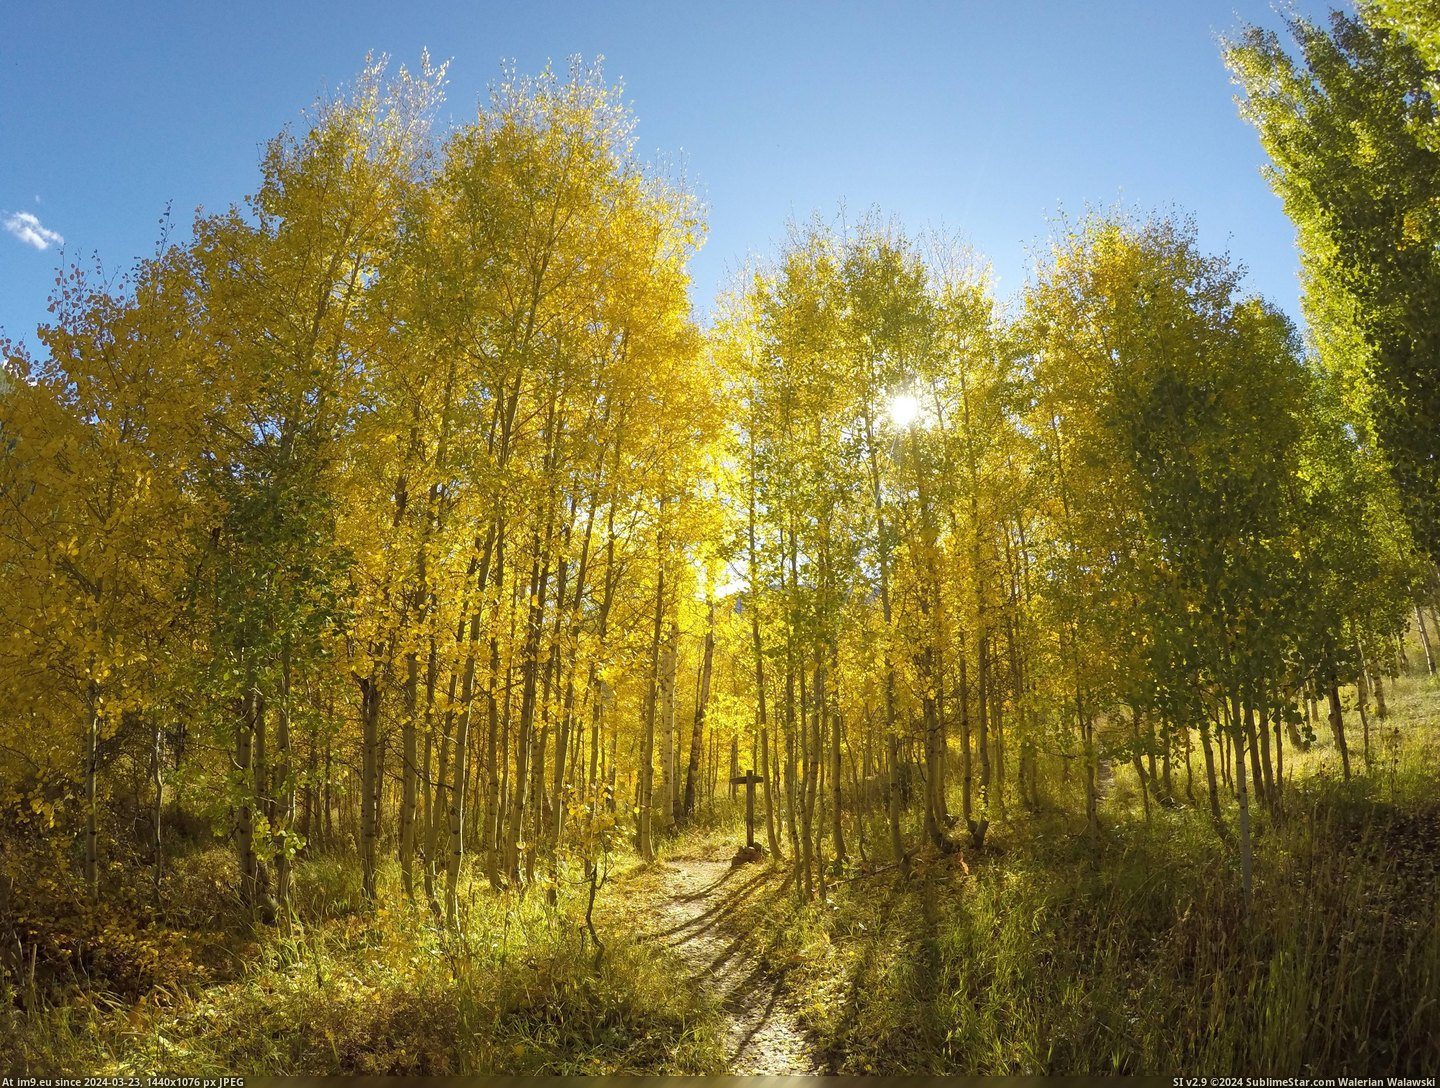 #Colorado #Fall #Gore #Begun #Creek #4000x3000 [Earthporn] Fall has begun at Gore Creek, Colorado  [4000x3000] Pic. (Image of album My r/EARTHPORN favs))